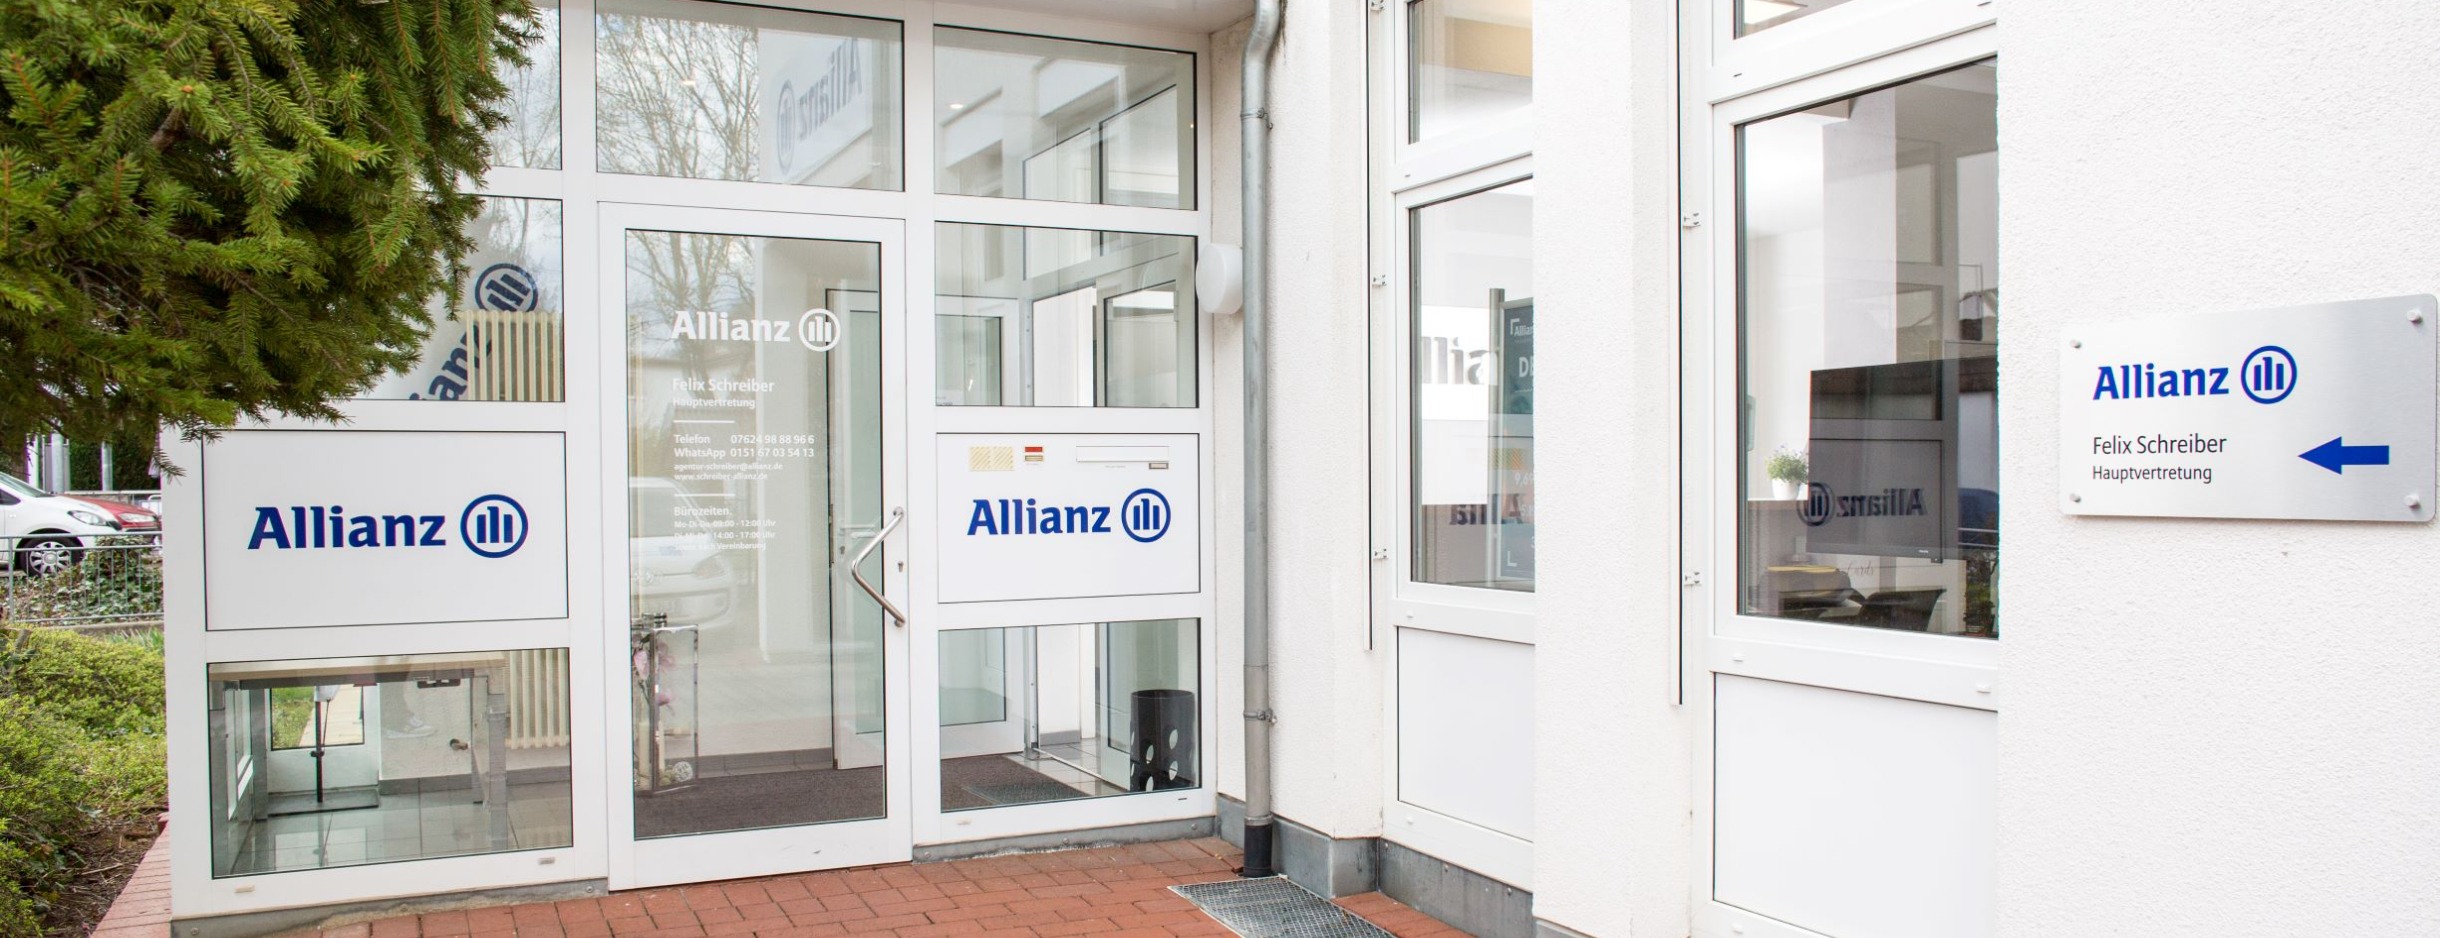 Allianz Versicherung Felix Schreiber Grenzach-Wyhlen - Titelbild